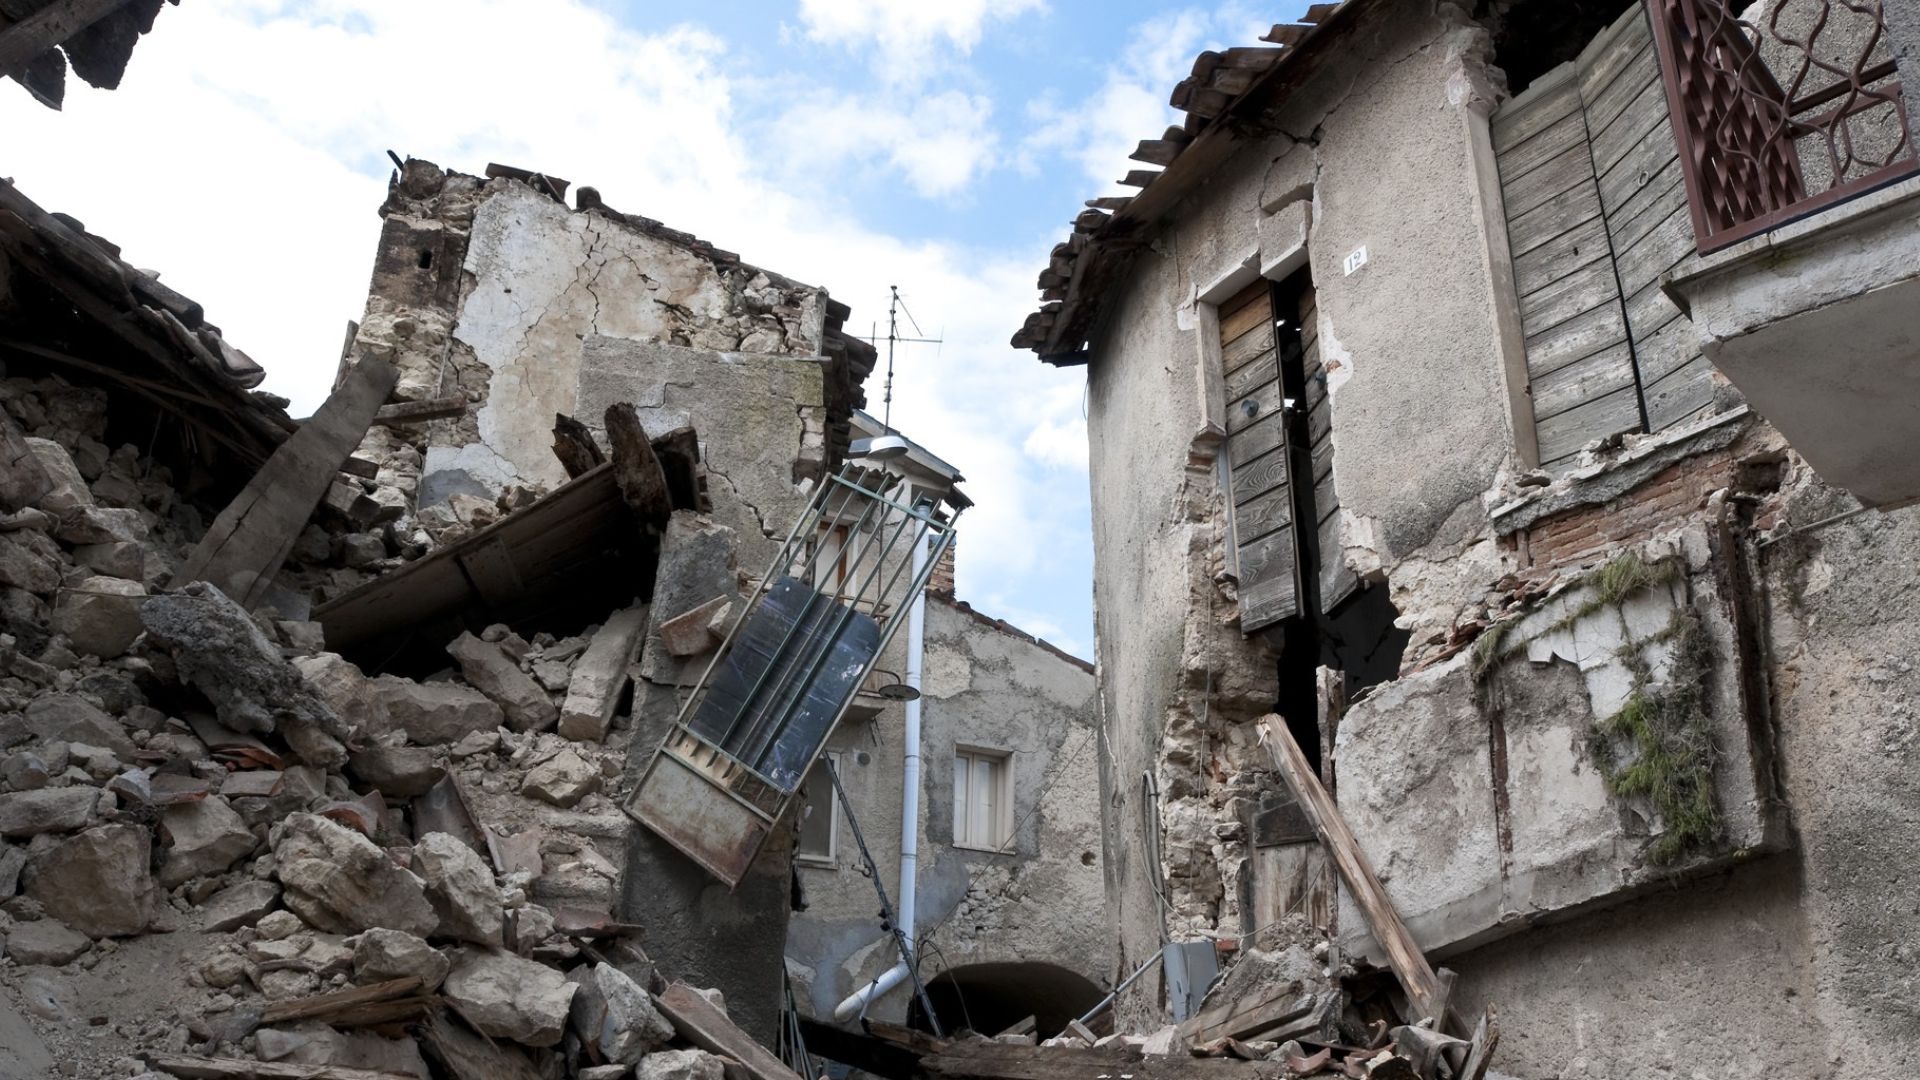 Pemulihan Pasca Bencana Alam: Pembangunan Kembali Komunitas dan Lingkungan yang Tahan Bencana